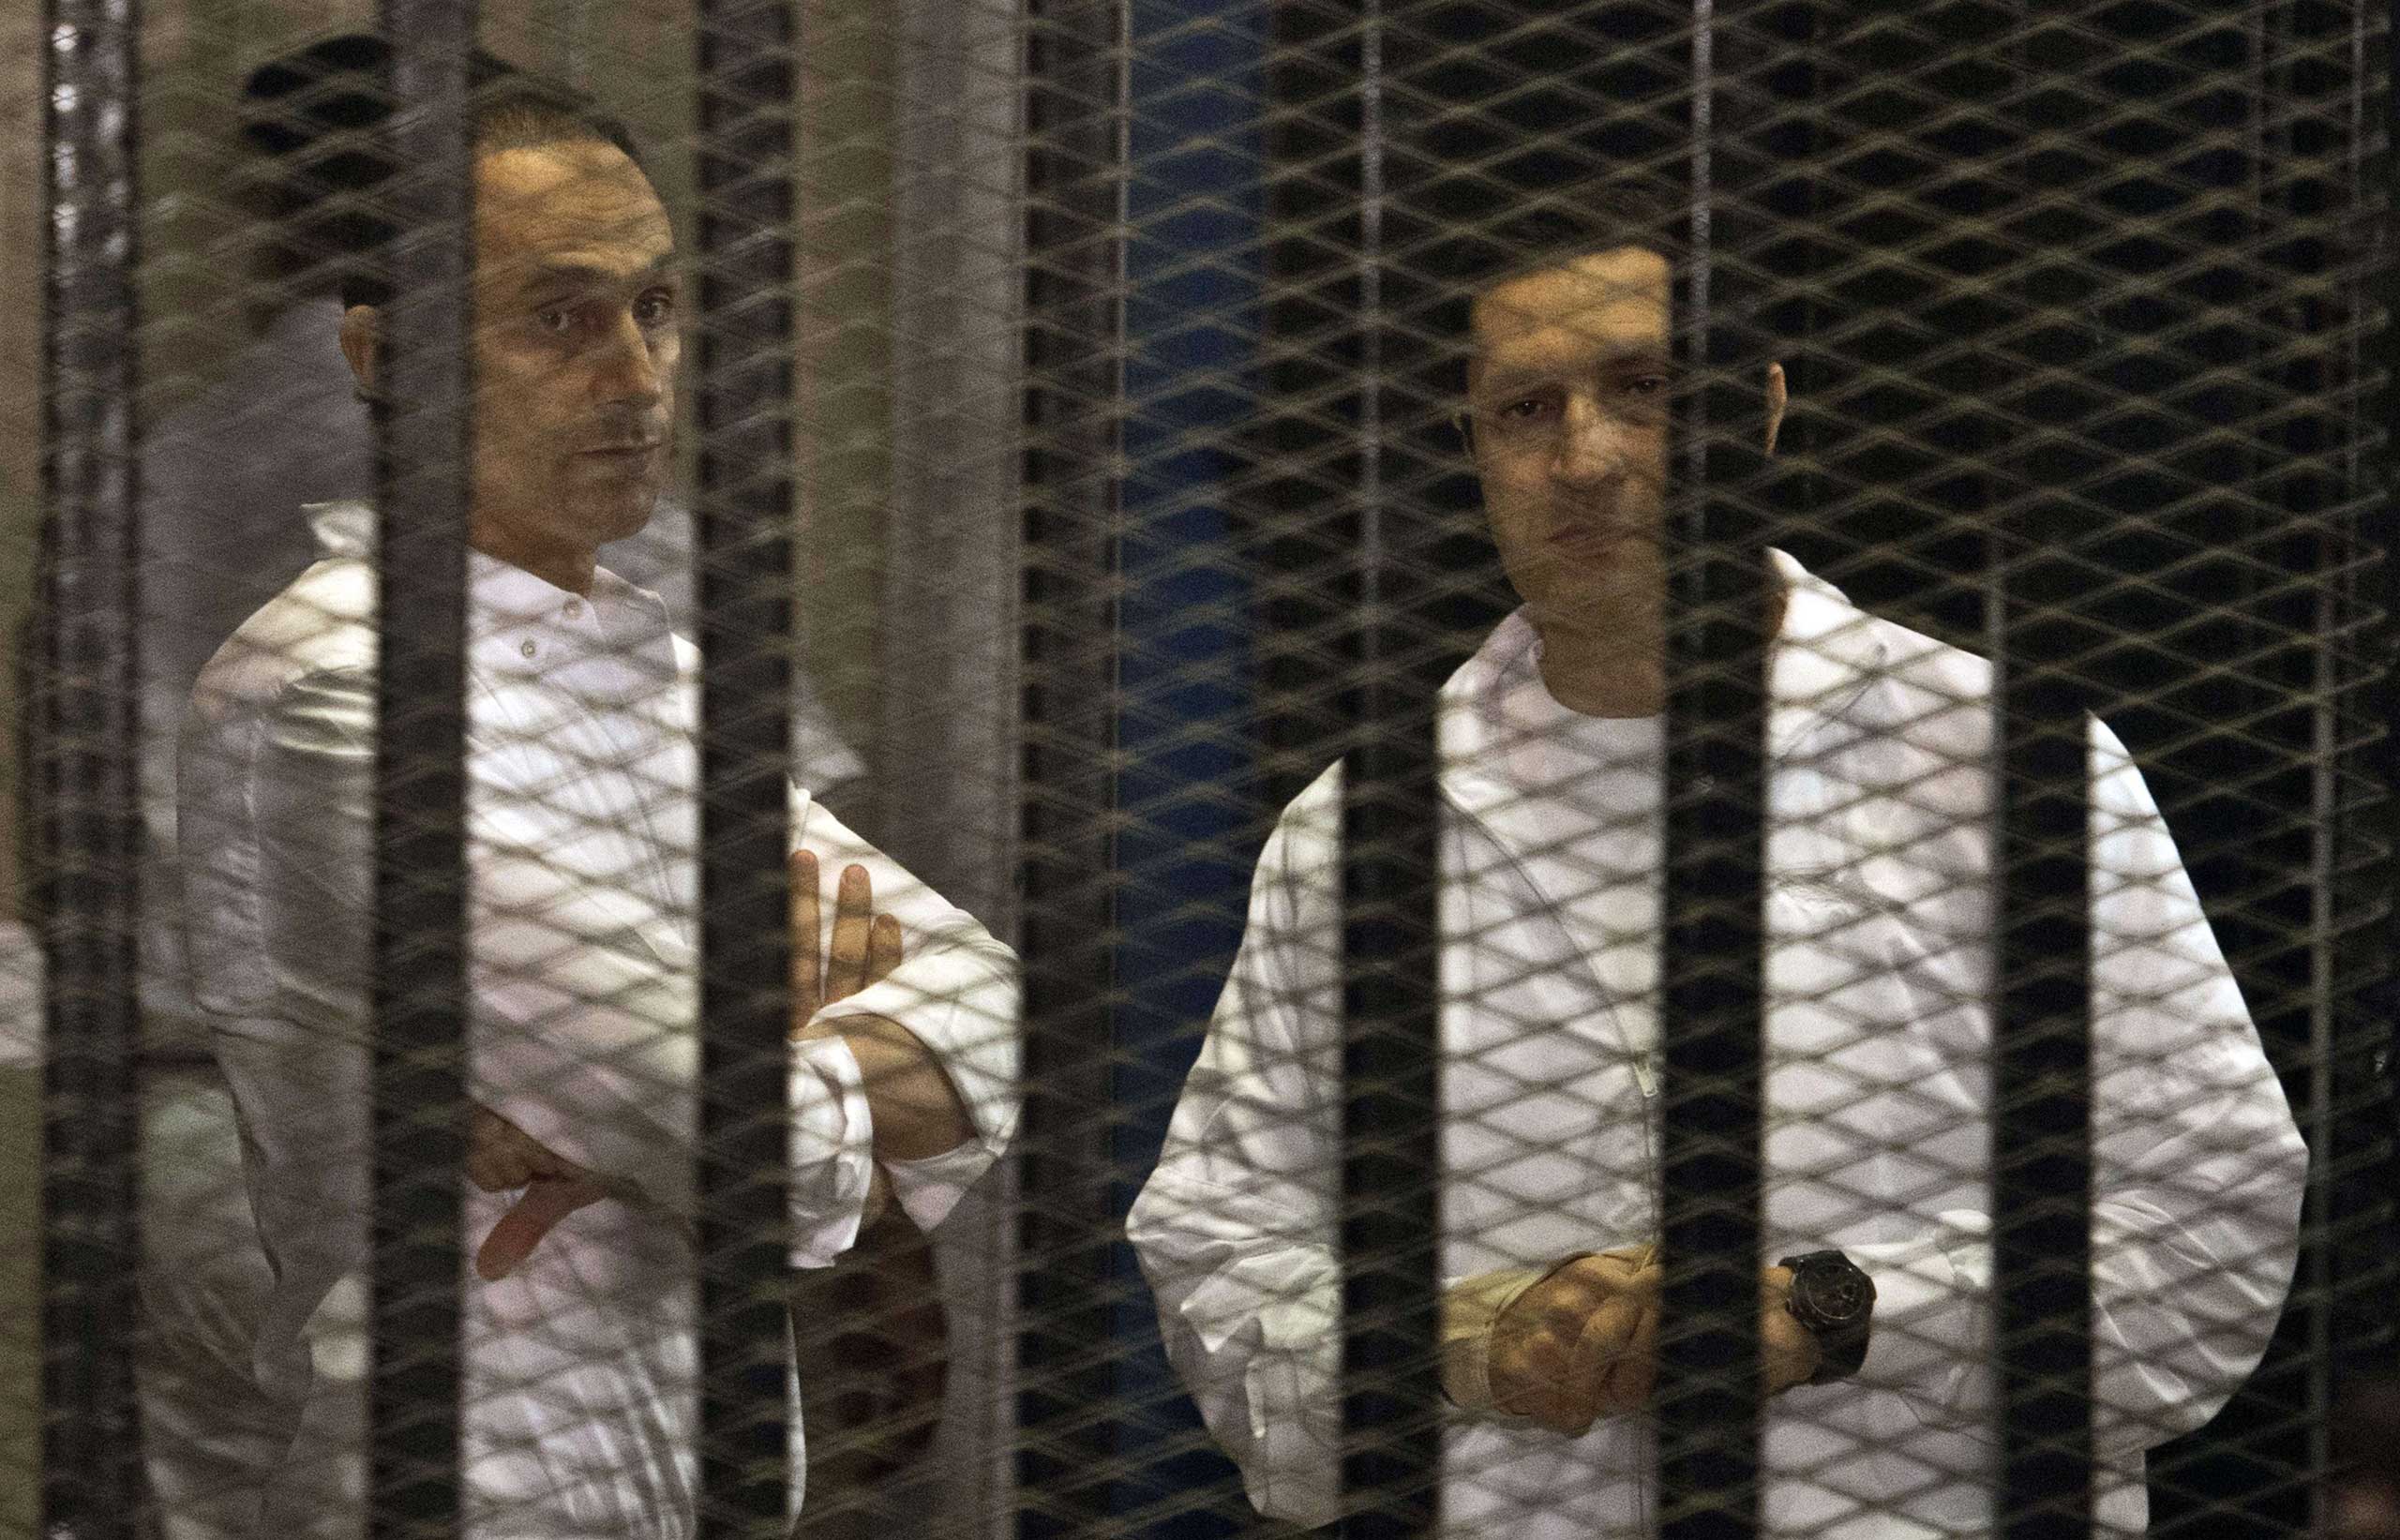 Mubarak sons